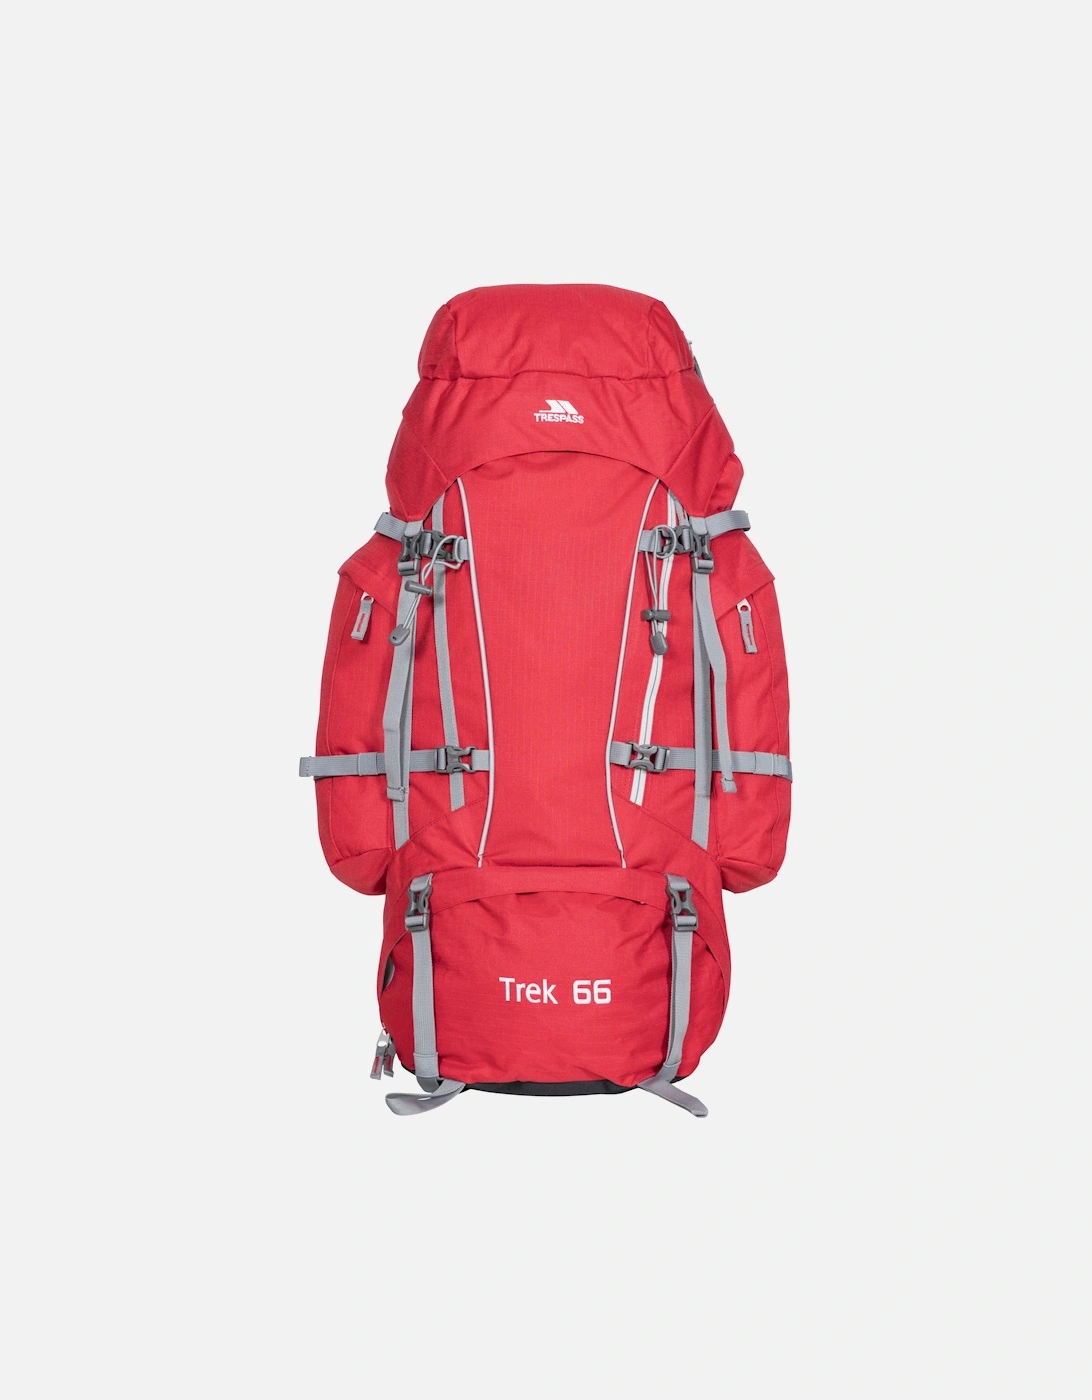 Trek 66 Backpack/Rucksack (66 Litres), 5 of 4